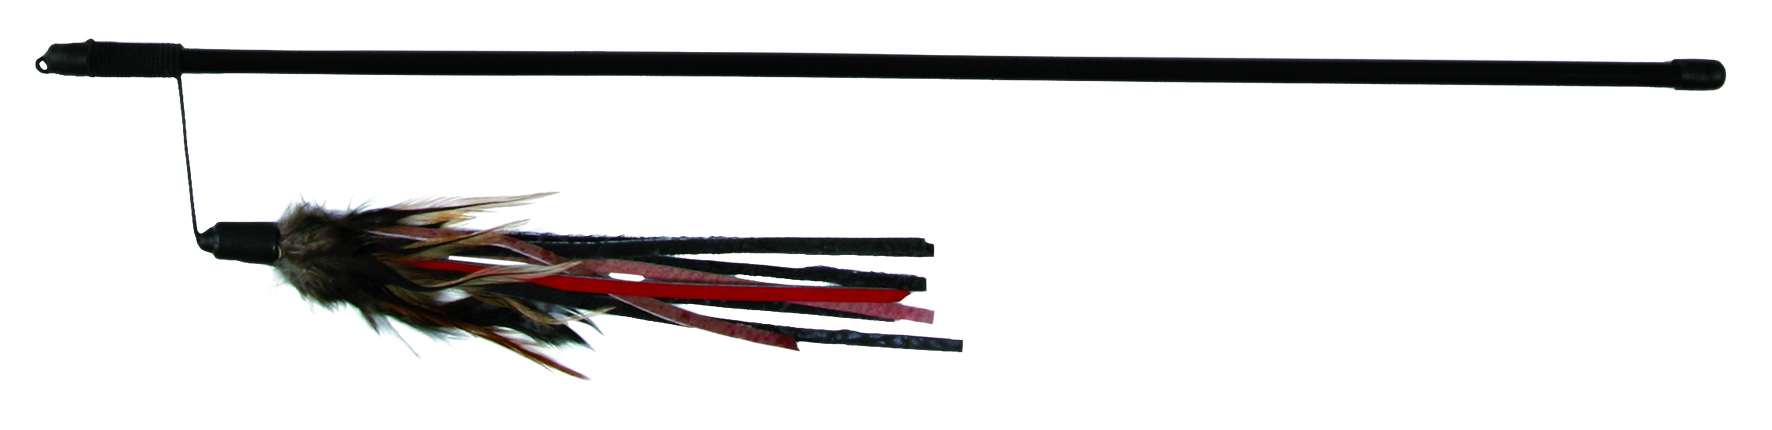 Spielangel mit Lederbändchen und Federn 50 cm